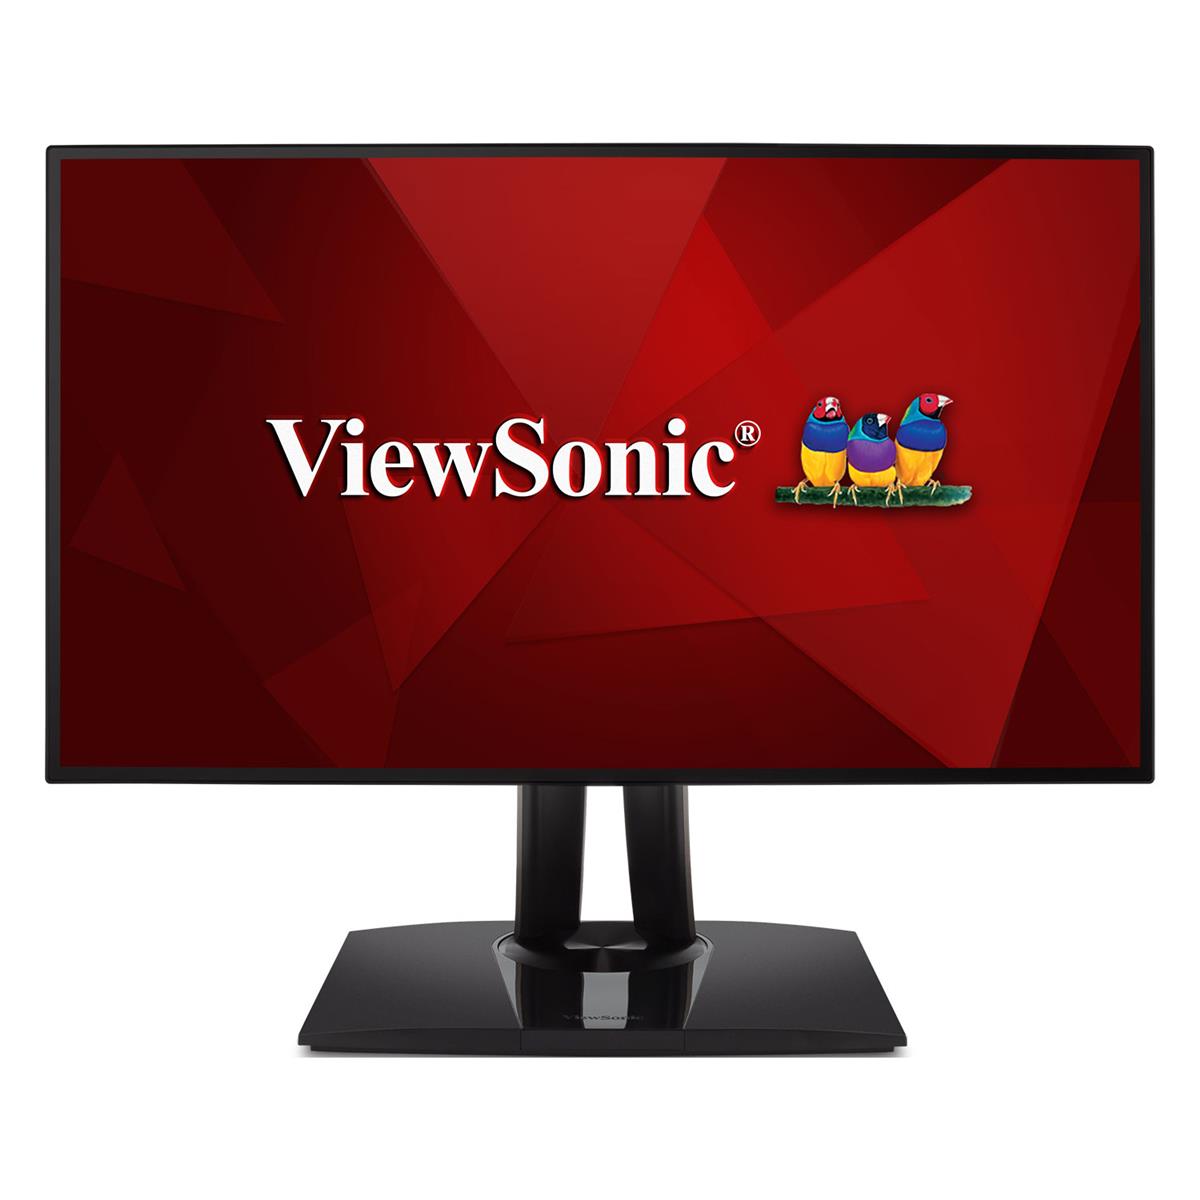 ViewSonic VP2468a 24-дюймовый Full HD IPS-монитор с соотношением сторон 16:9 и светодиодной подсветкой #VP2468A